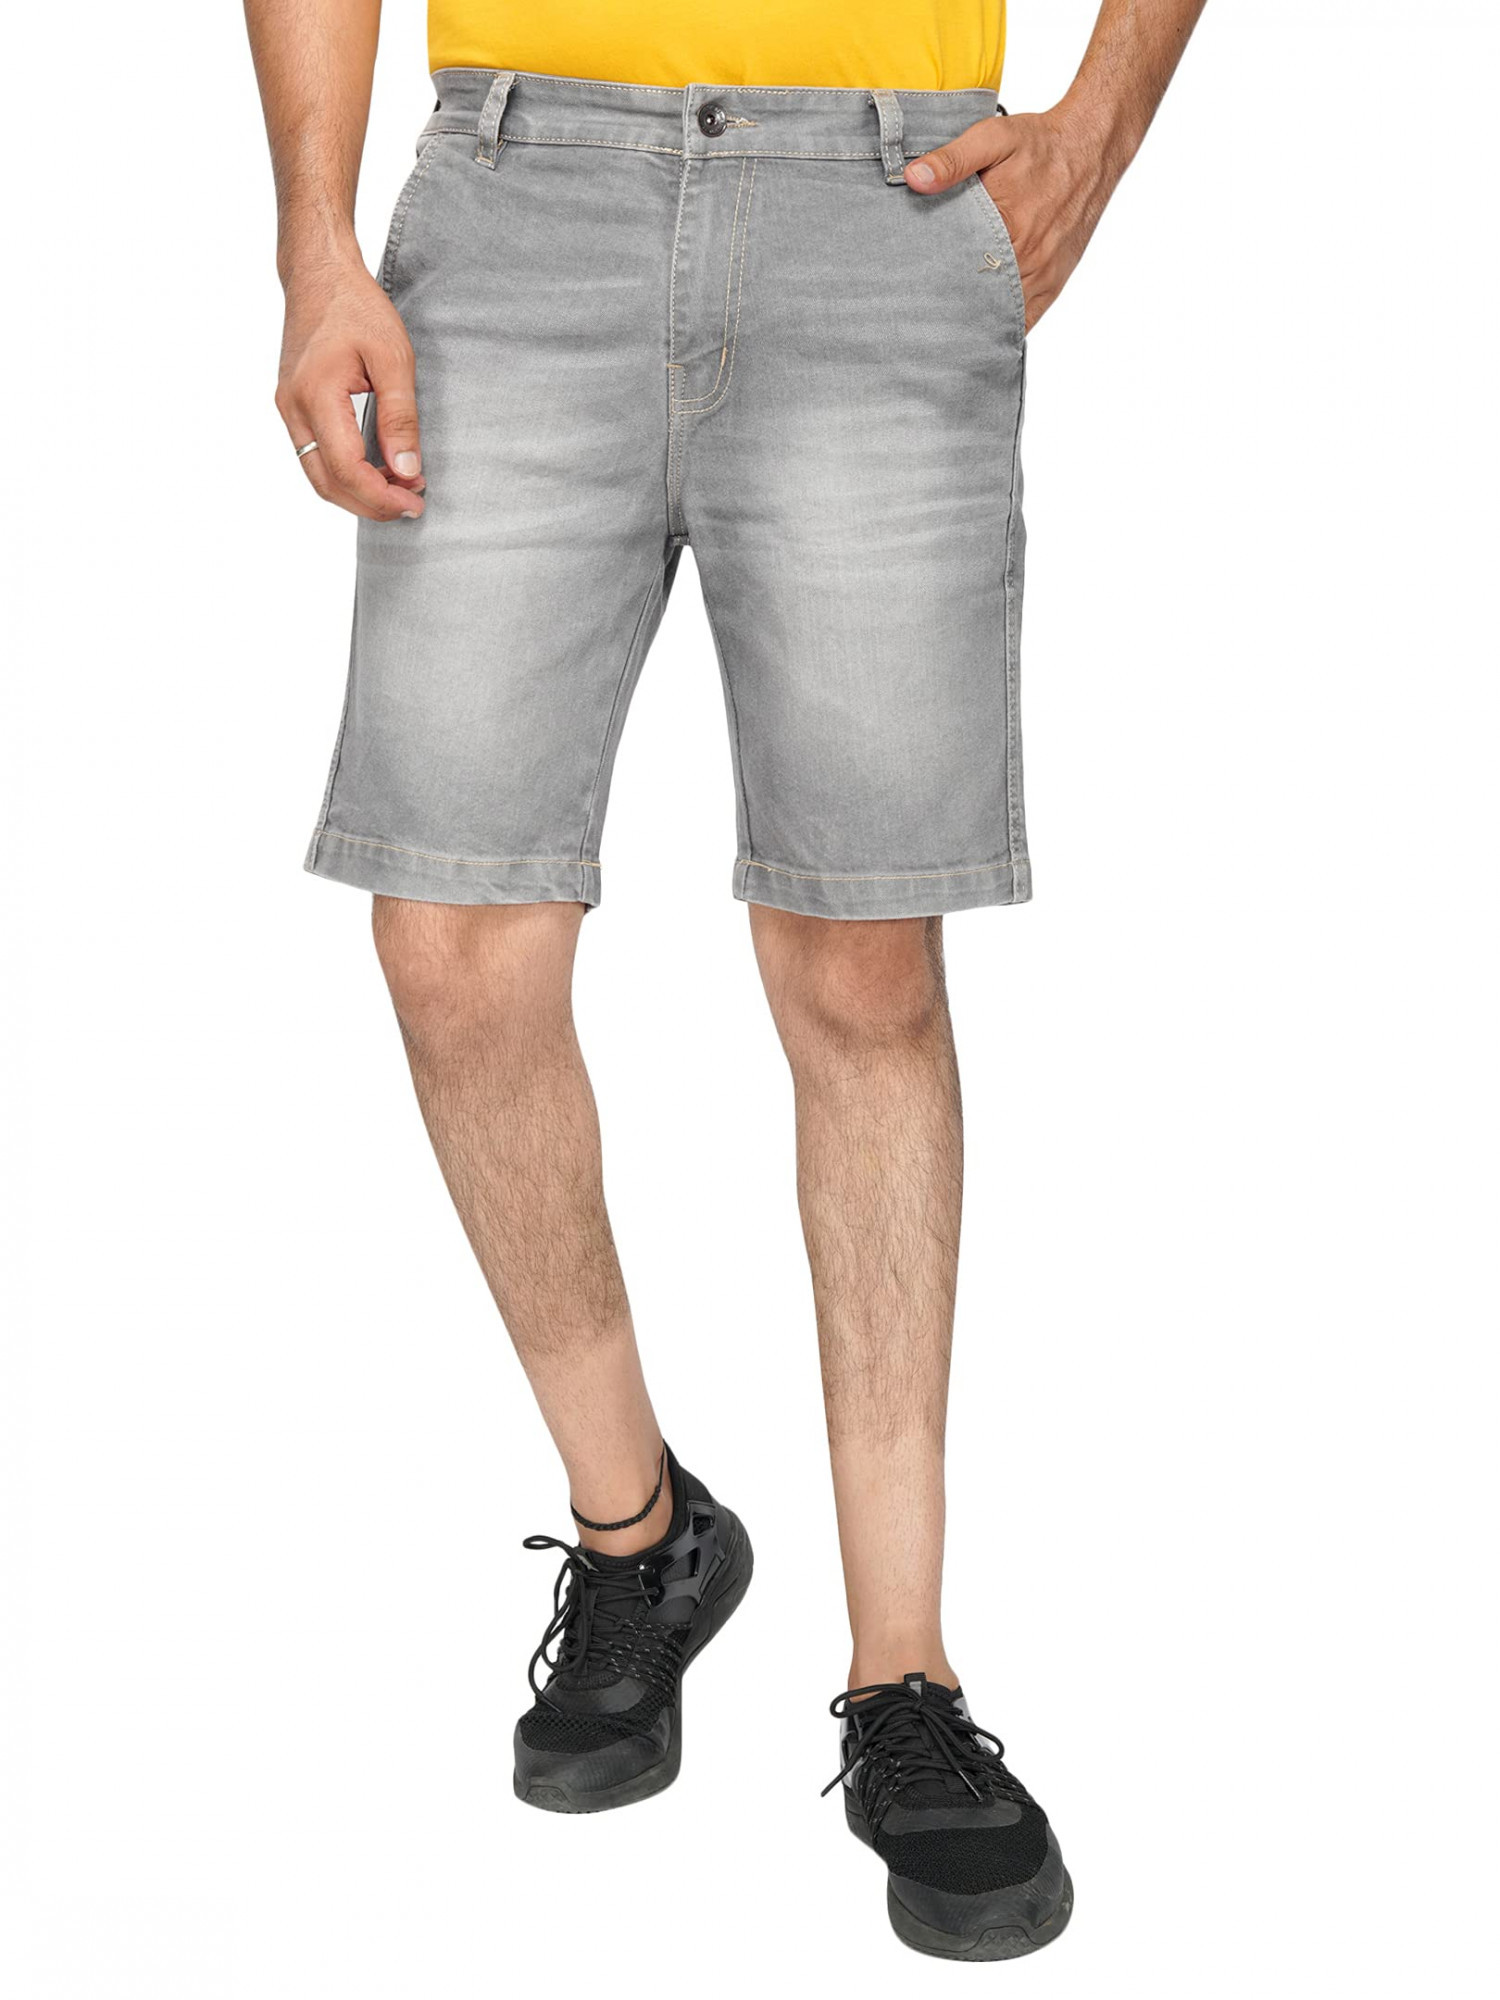 Ben Martin Men's Regular Fit Side Stripe Stretchable Blue_RG Denim Shorts  Size 30,Size 30